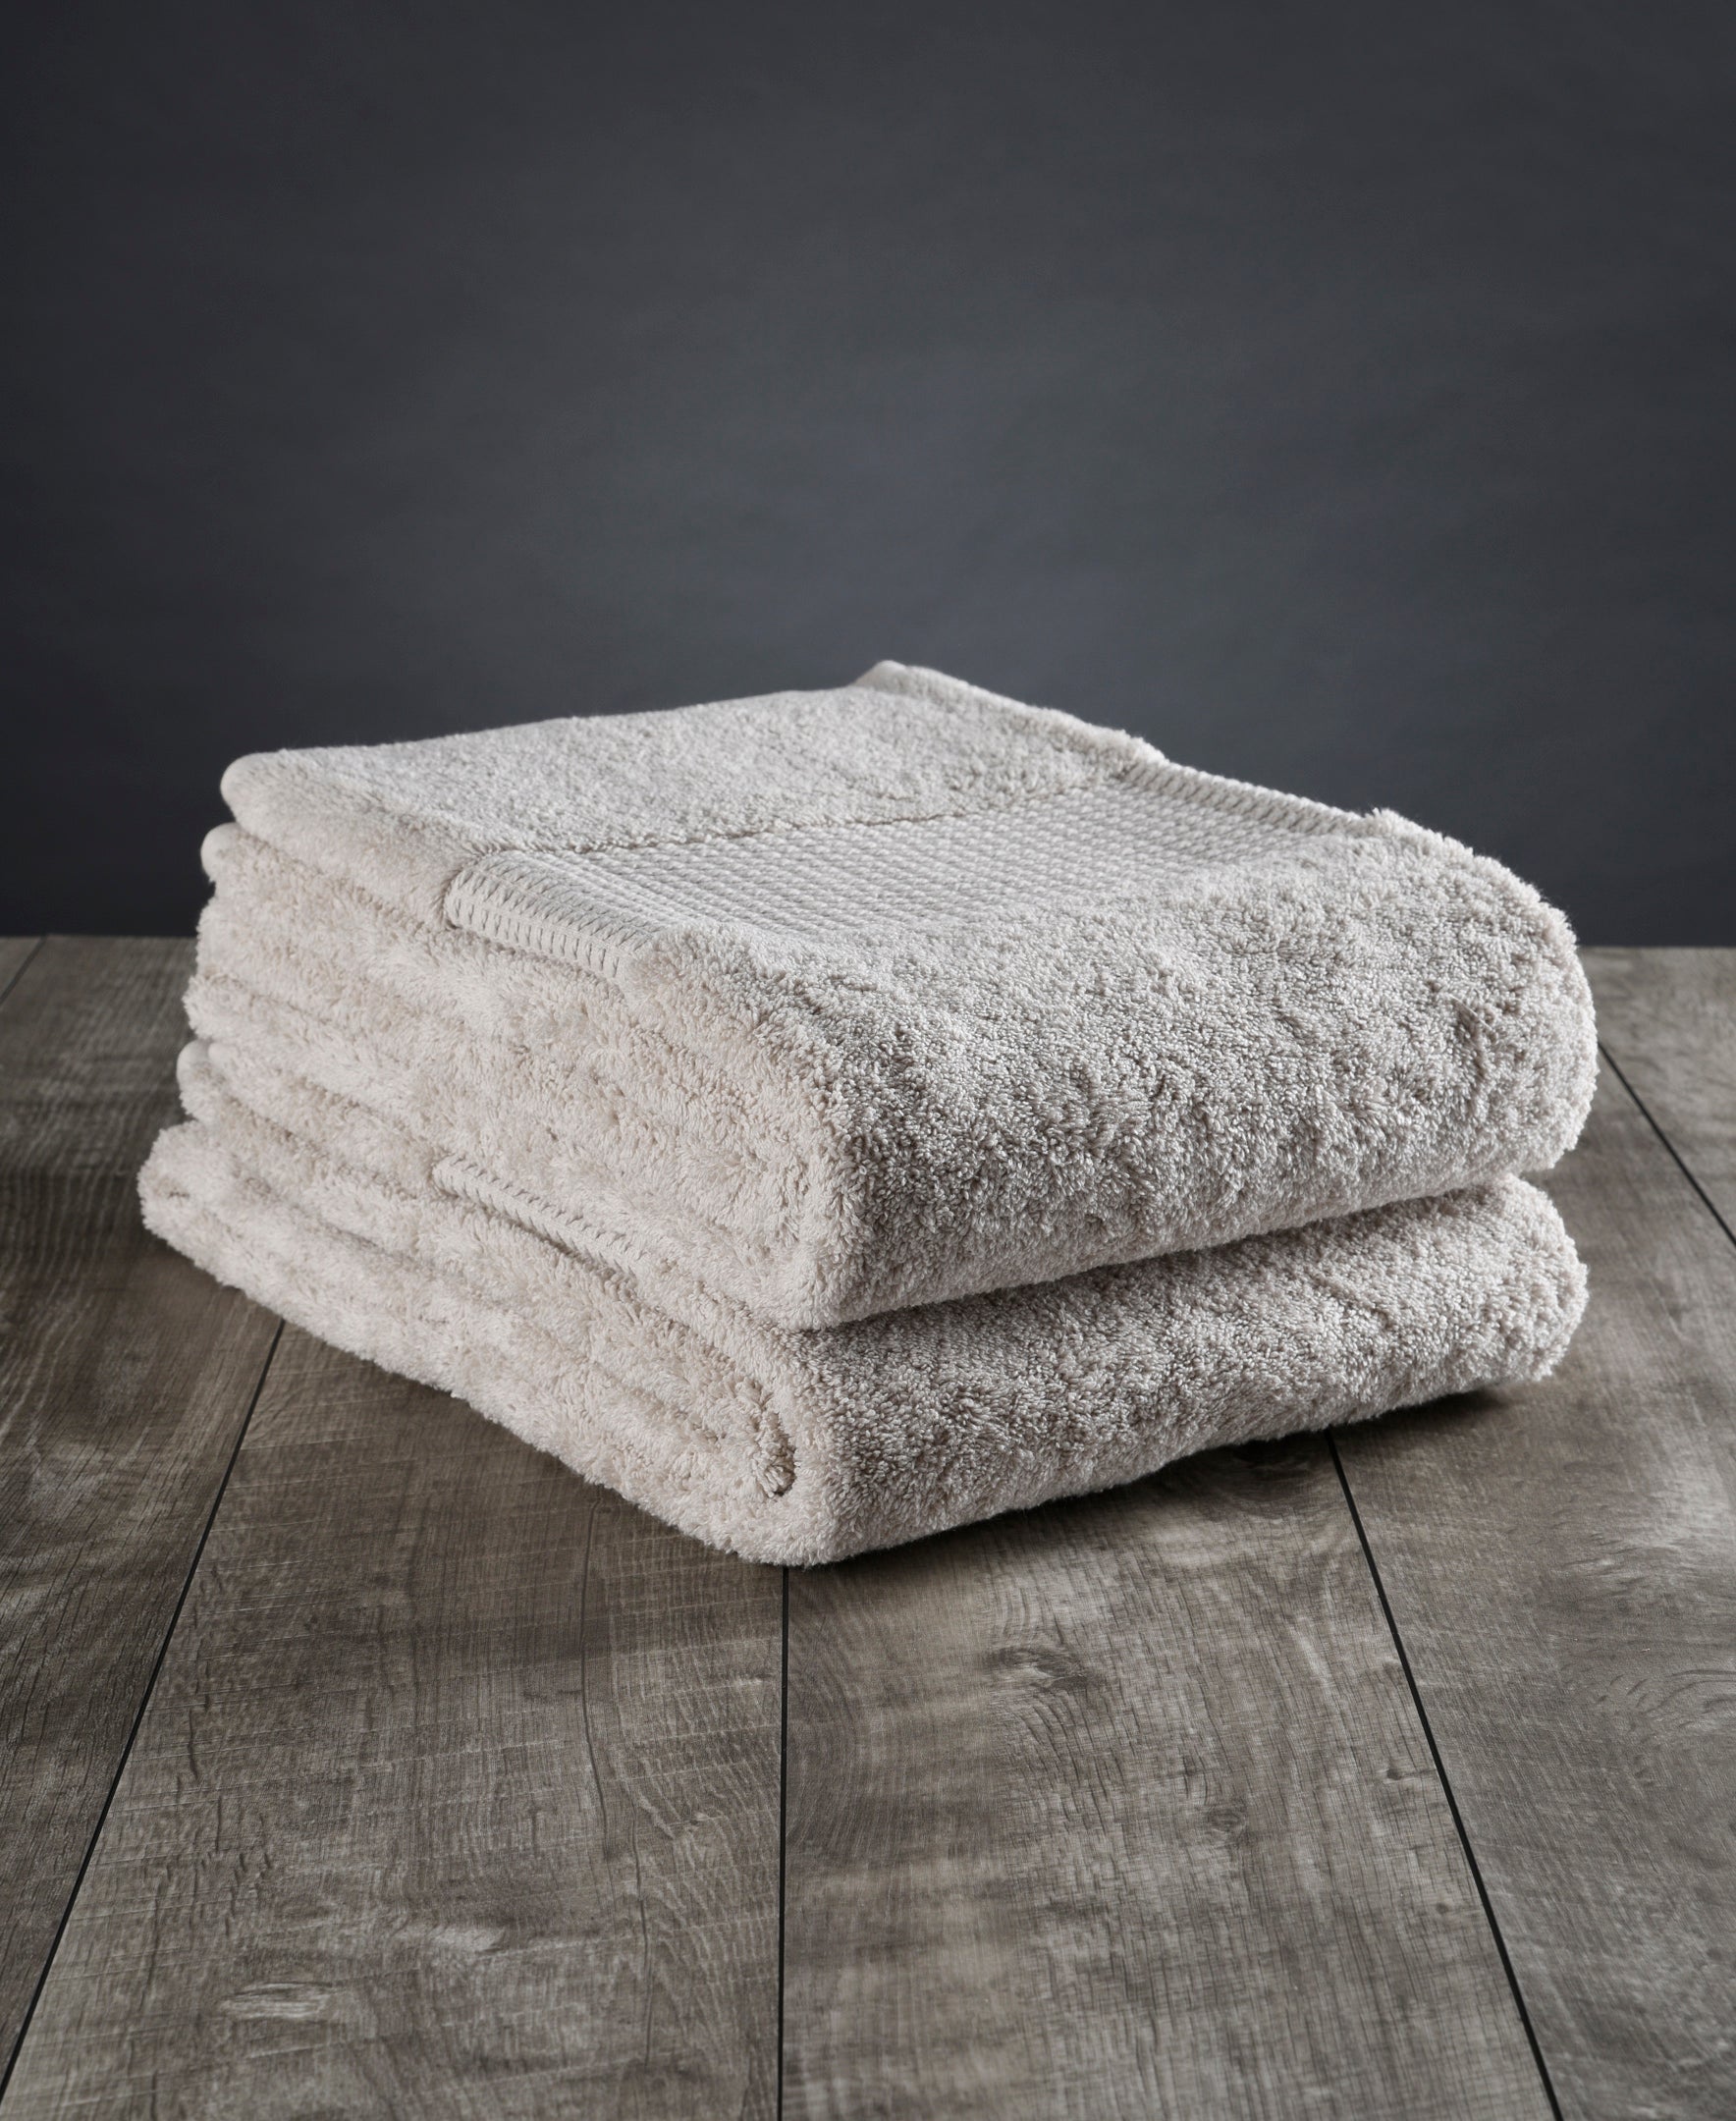 Colección de toallas de baño 100% algodón orgánico 